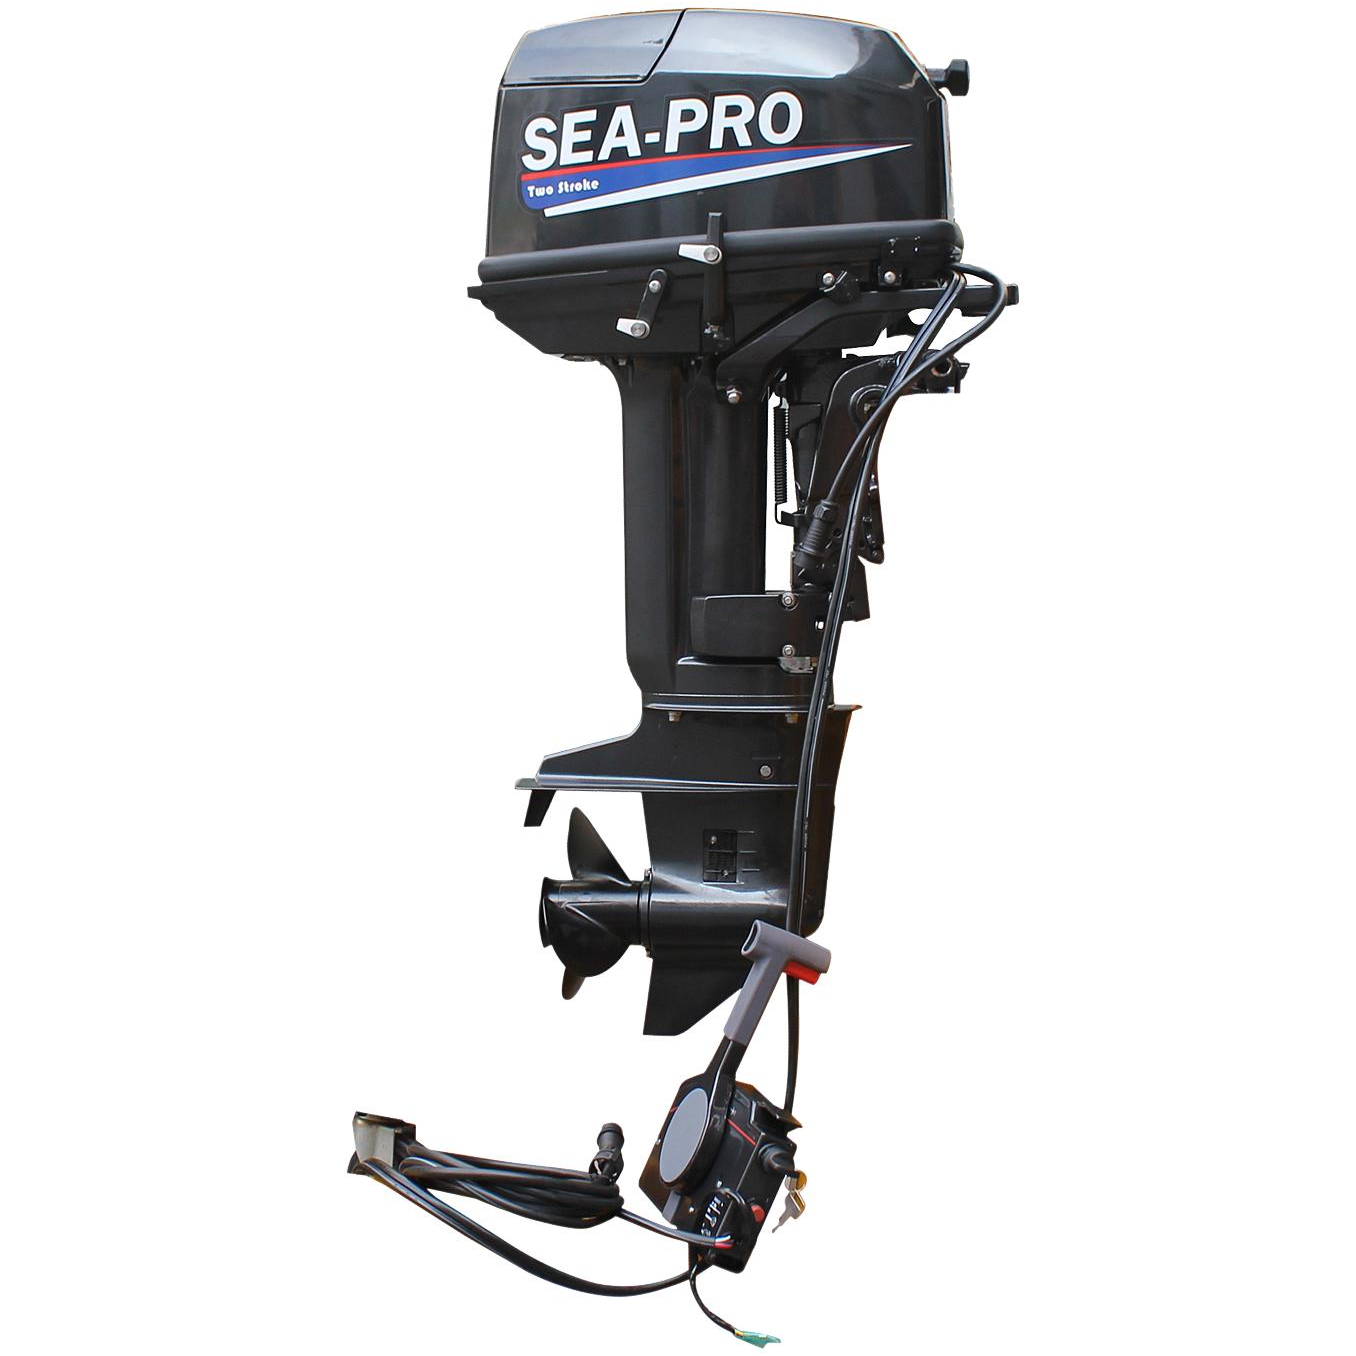 Где можно купить лодочные моторы. Лодочный мотор Sea-Pro т 30s. Лодочный мотор Sea-Pro t 30 s. Лодочный мотор Sea Pro t 30s&e. Мотор Sea Pro 30 s&e.